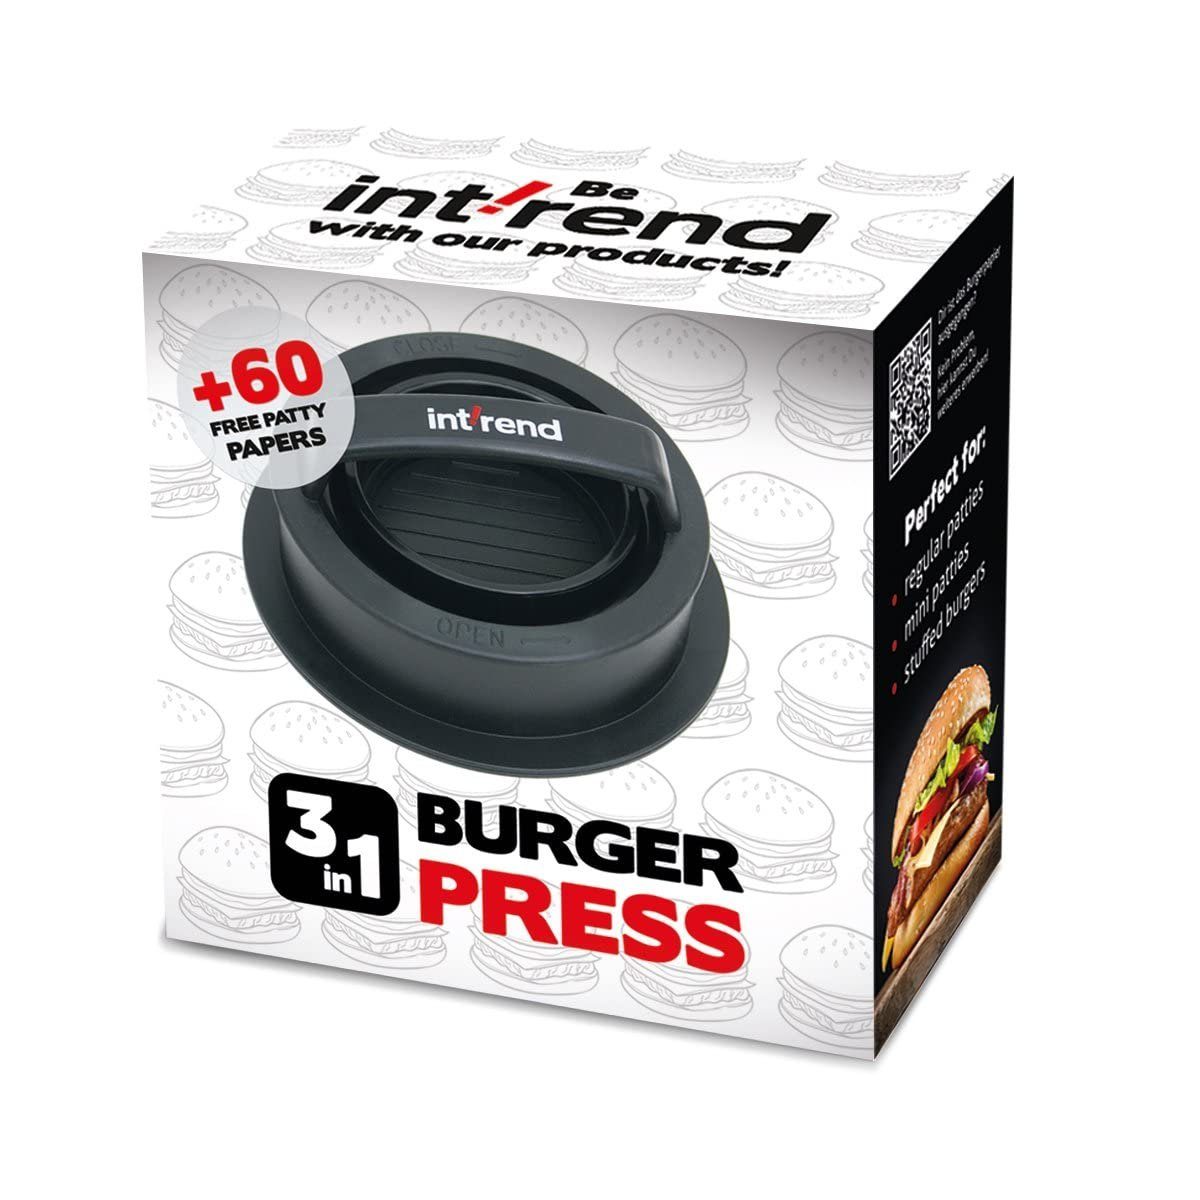 Metall, mit 3-in-1 60 Backpapieren, 3 Burgerpresse 60 und Funktionen mit int!rend Backpapieren Burgerpresse Burgerpresse